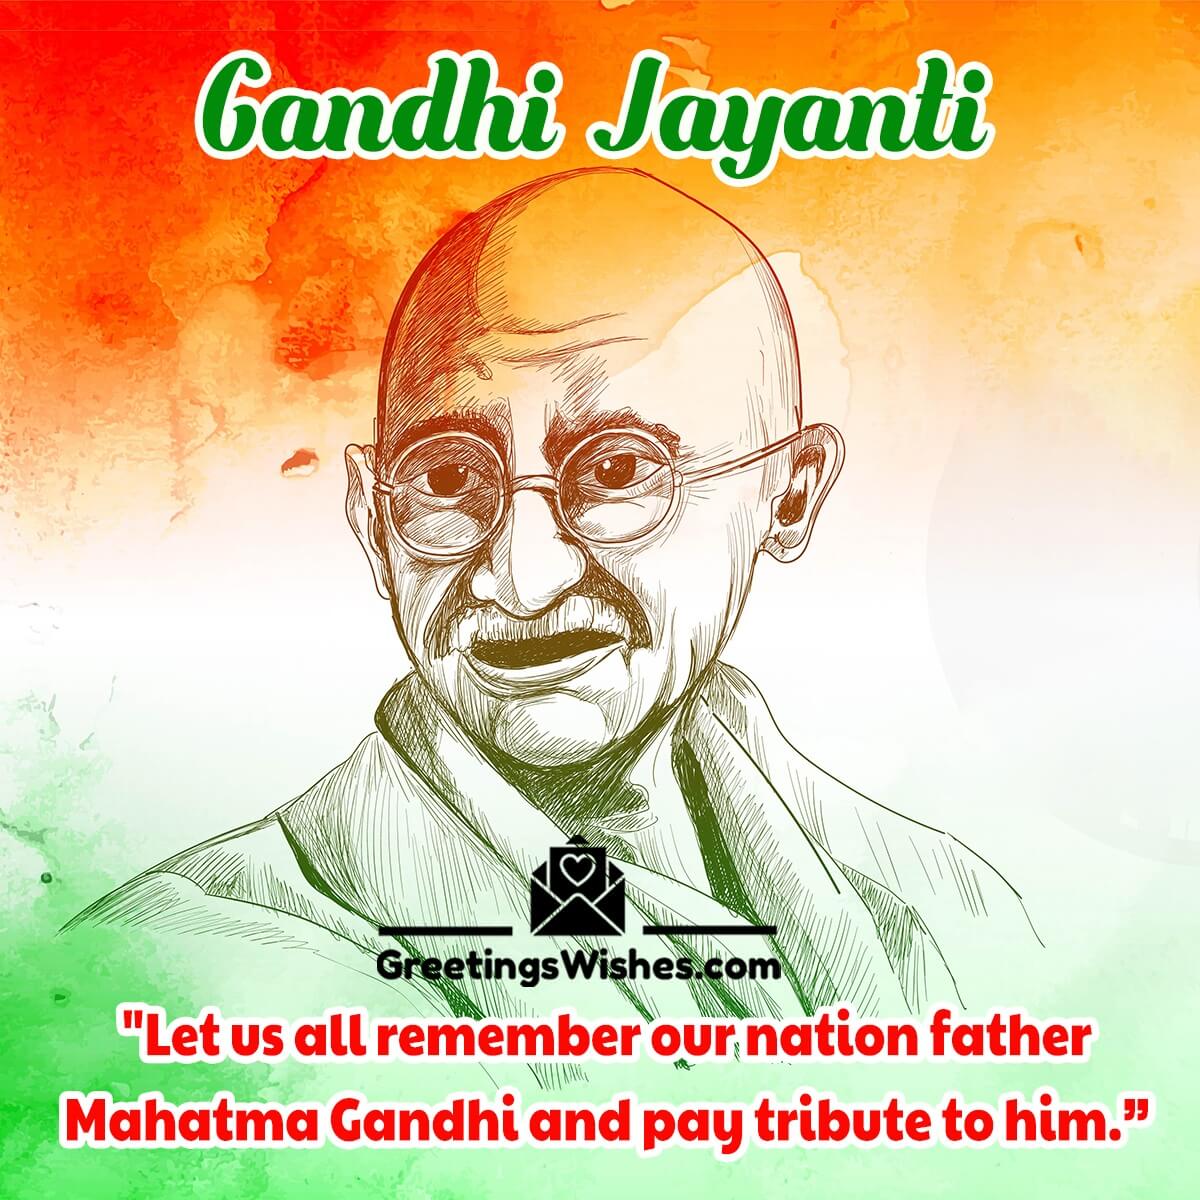 Gandhi Jayanti Message